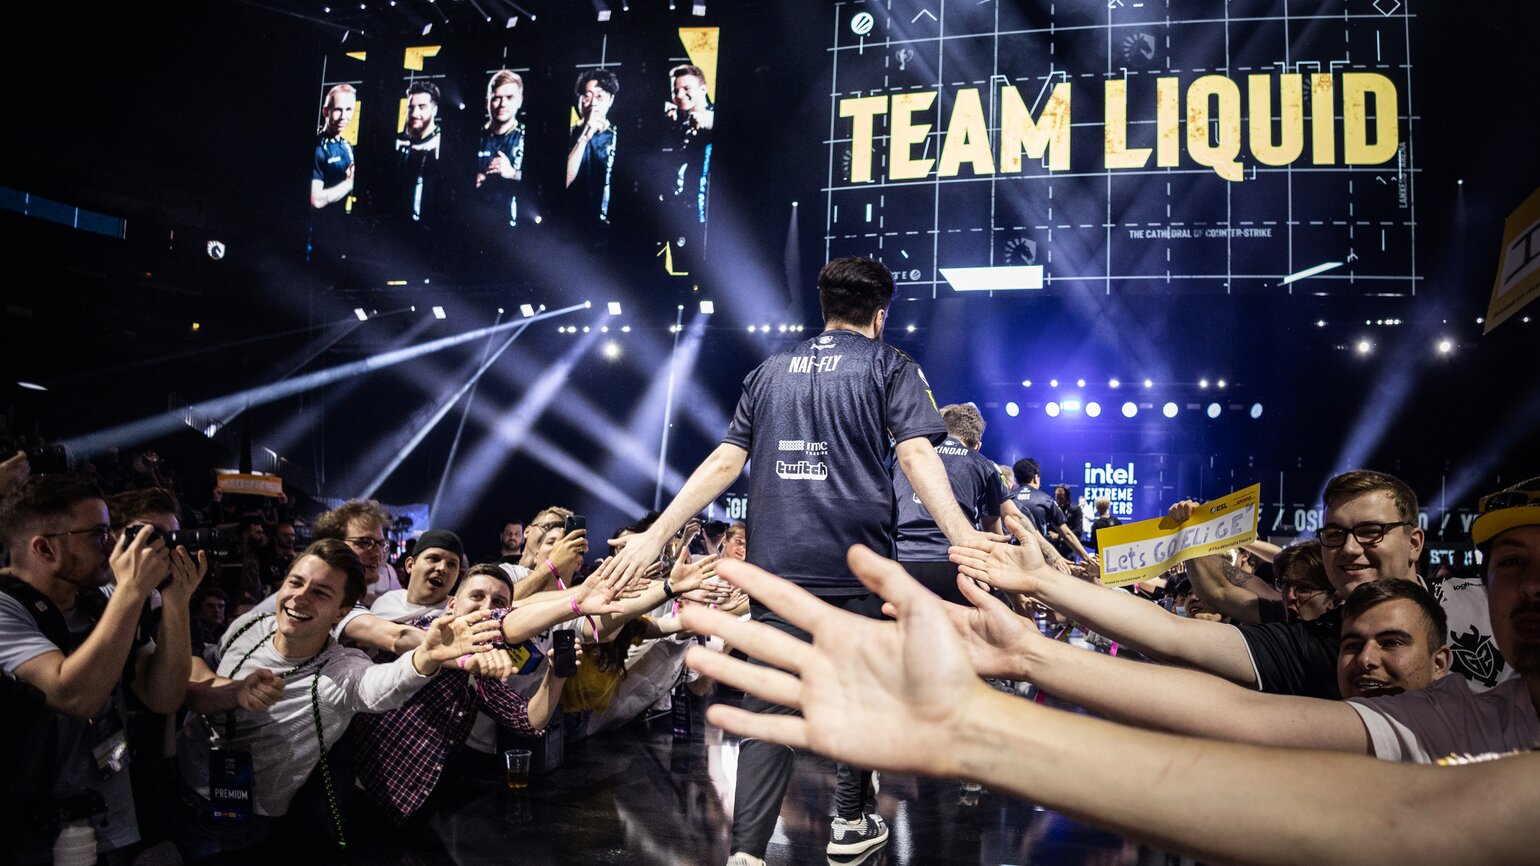 Esportspeler van Team Liquid viert overwinning met fans die handen reiken voor een high-five in een verlichte arena